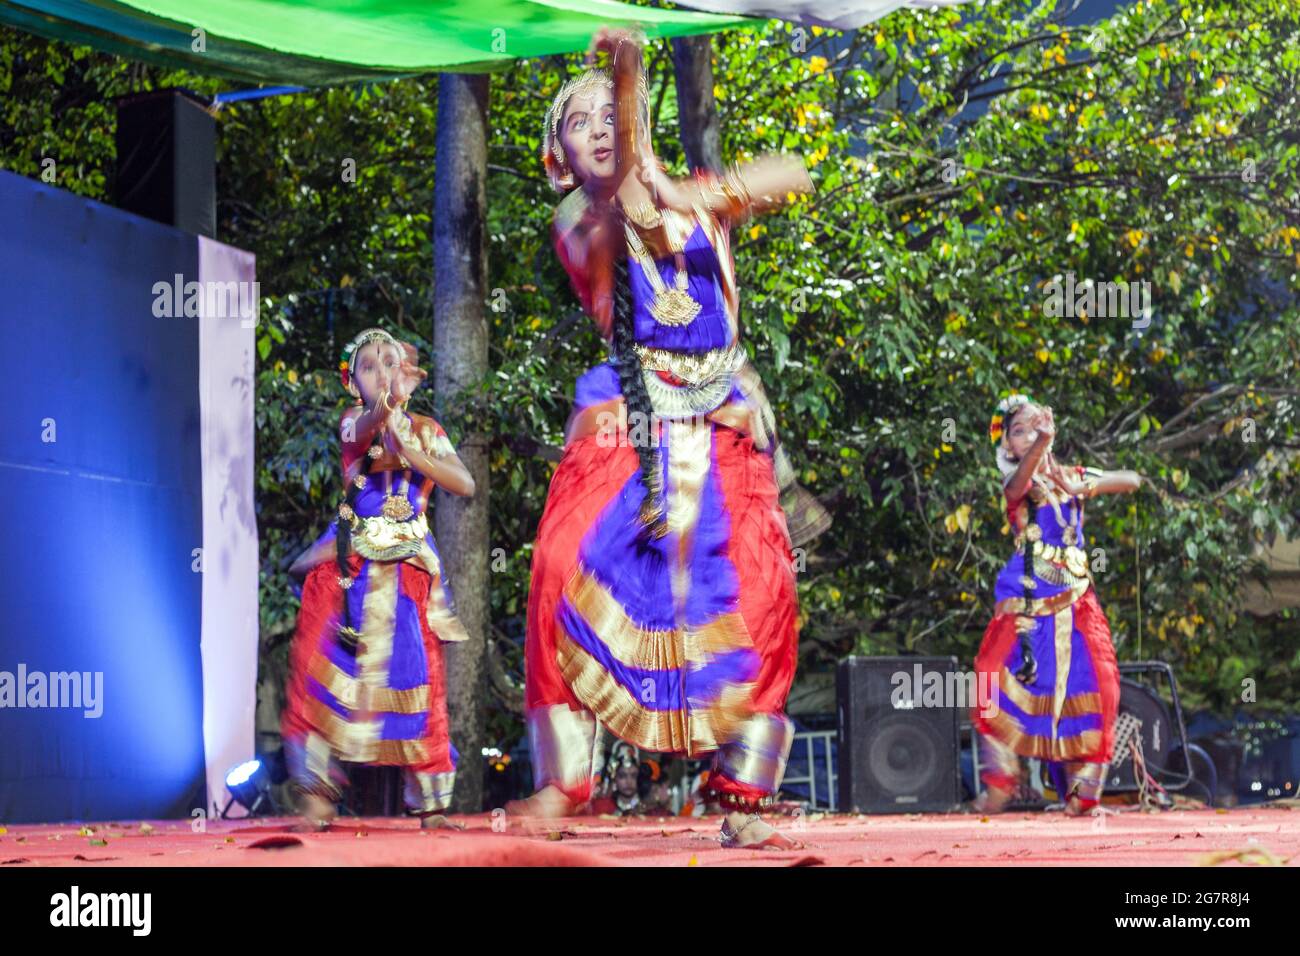 De jeunes danseuses indiennes classiques en costumes colorés se produisent sur scène, fort Kochi (Cochin), Kerala, Inde Banque D'Images